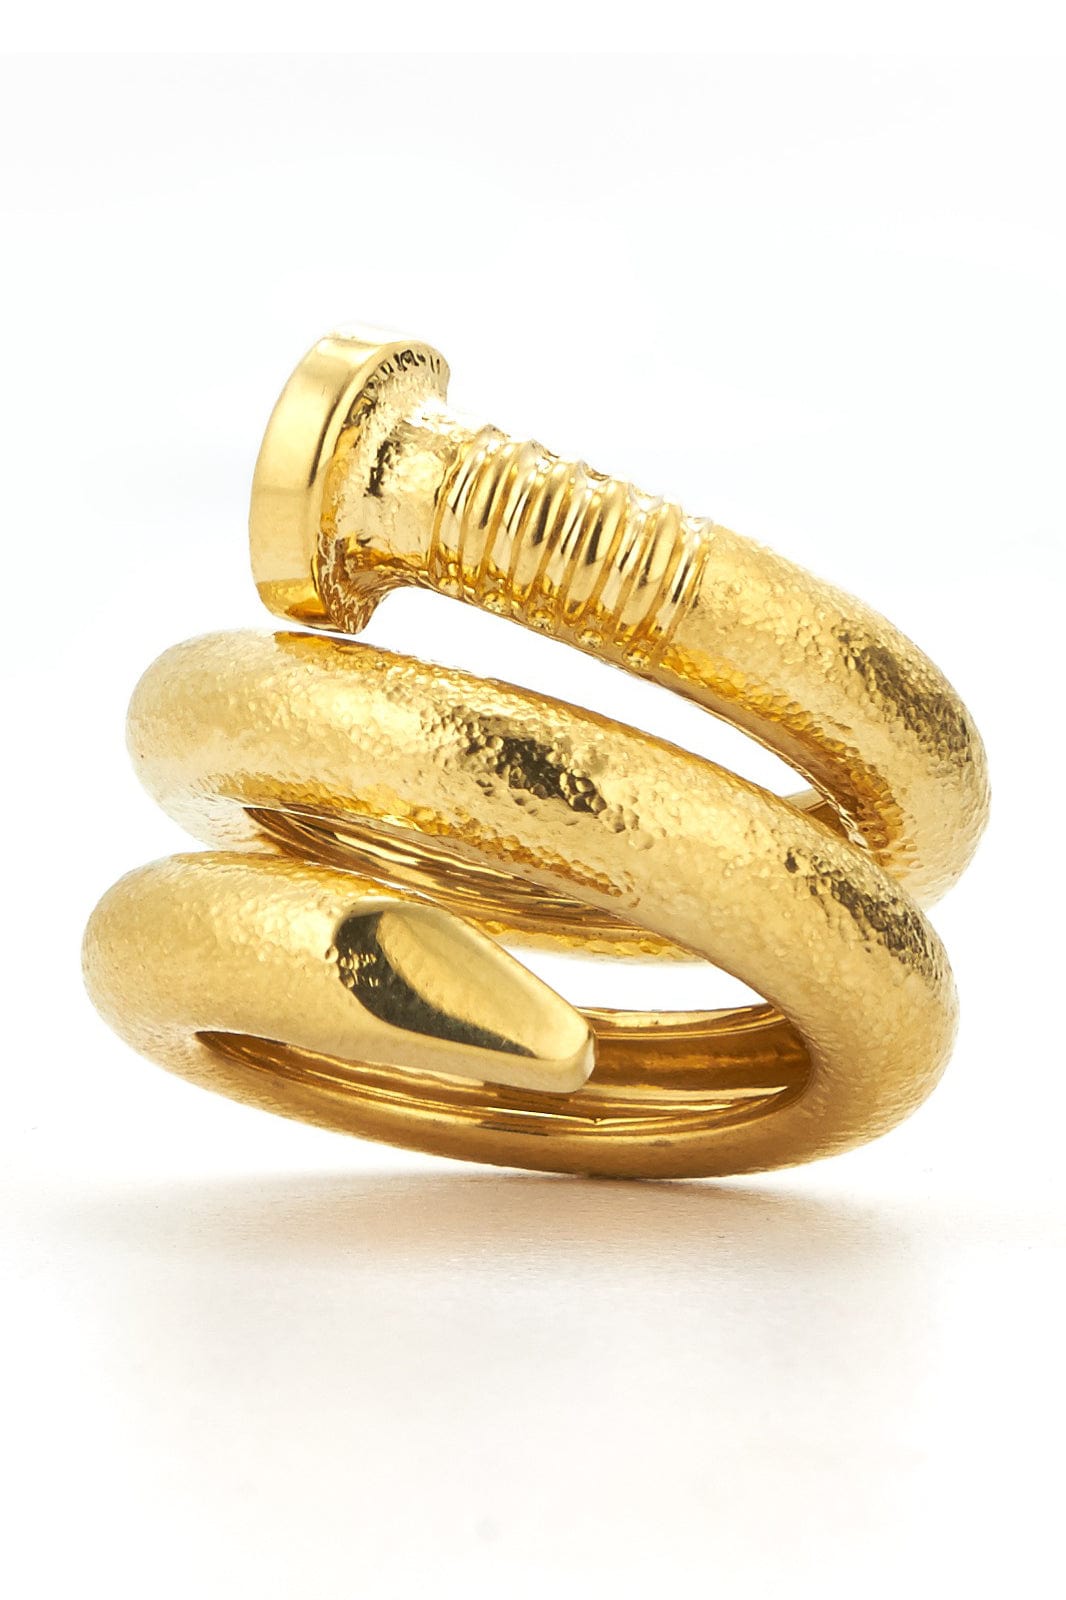 DAVID WEBB-Nail Ring-YELLOW GOLD